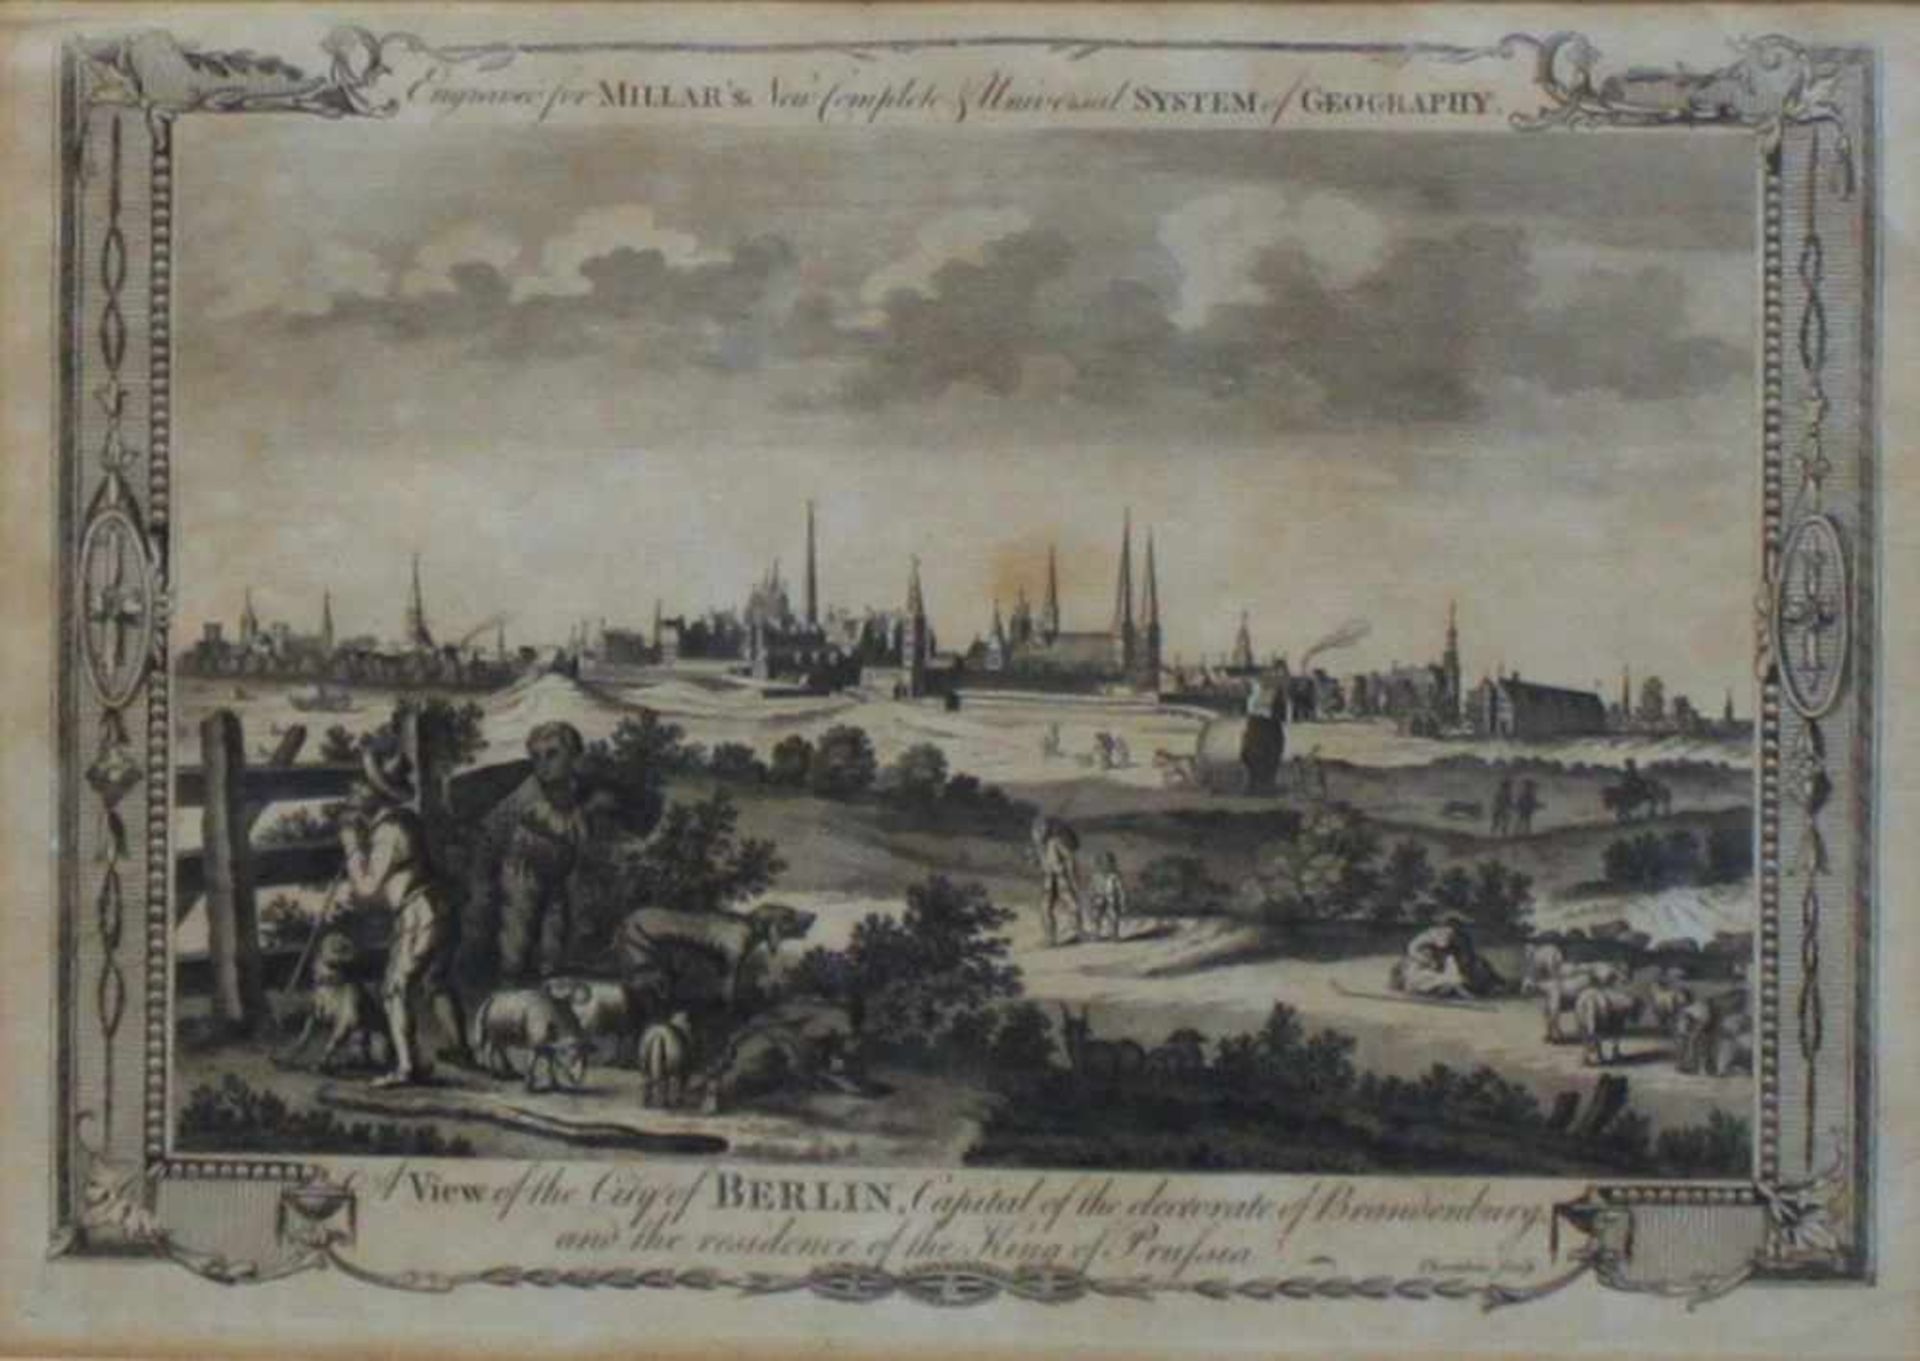 Berlin. Gesamtansicht.Kupferstich von Thornton aus der Zeit um 1780. Bildgröße 28,5 x 20 cm.